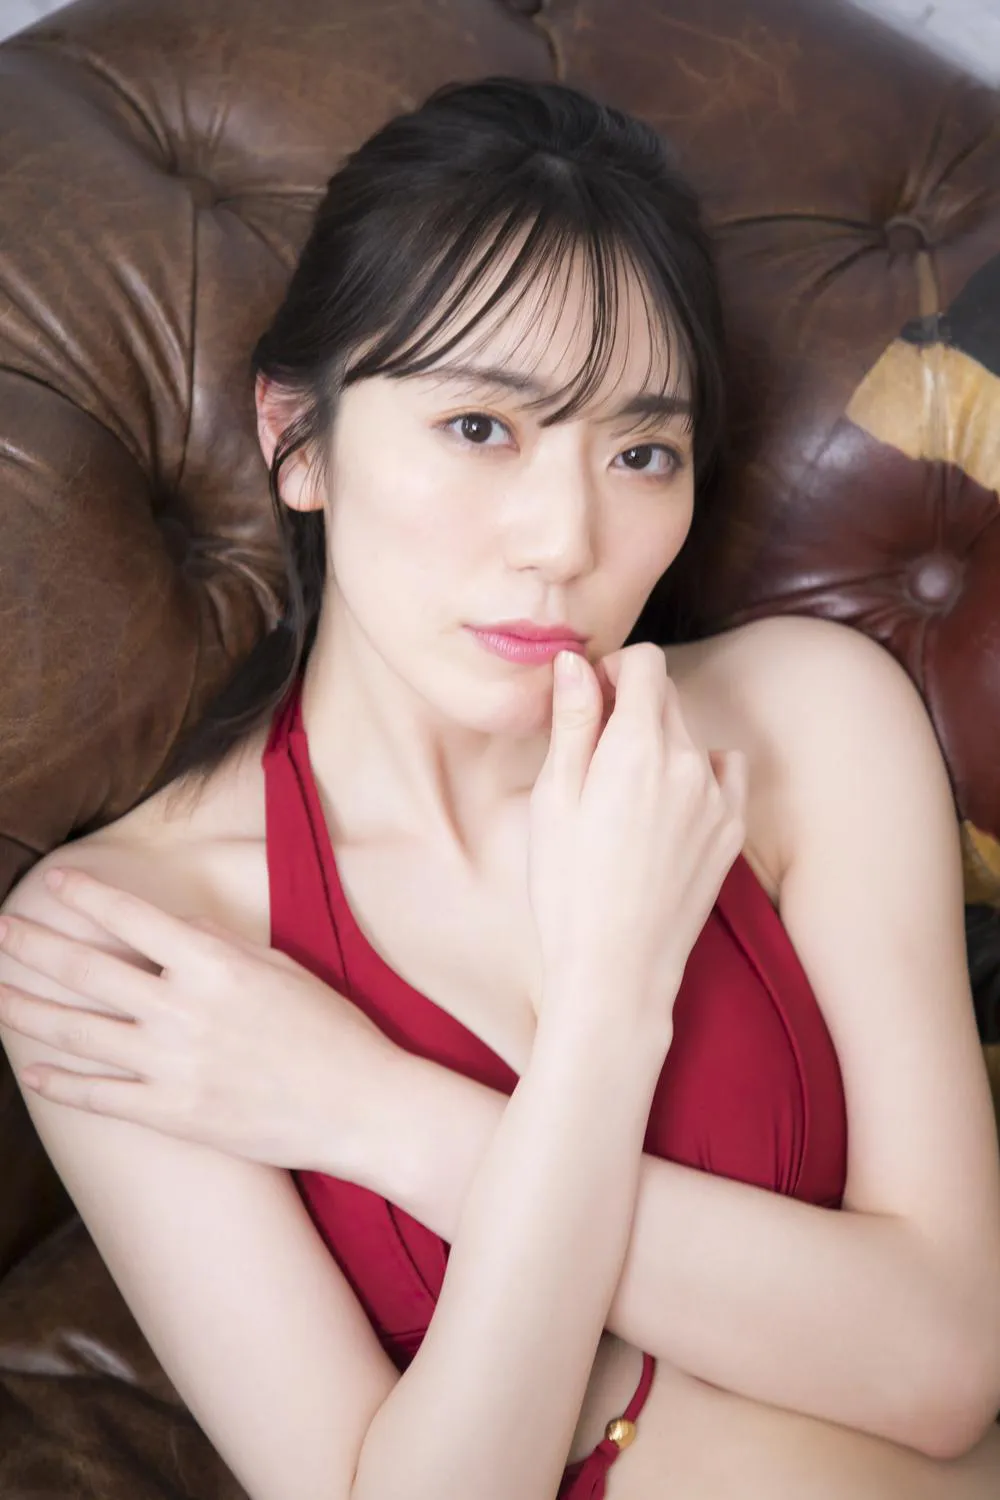 写真集重版を決まり、松井咲子の赤ビキニ姿の未公開カットが解禁